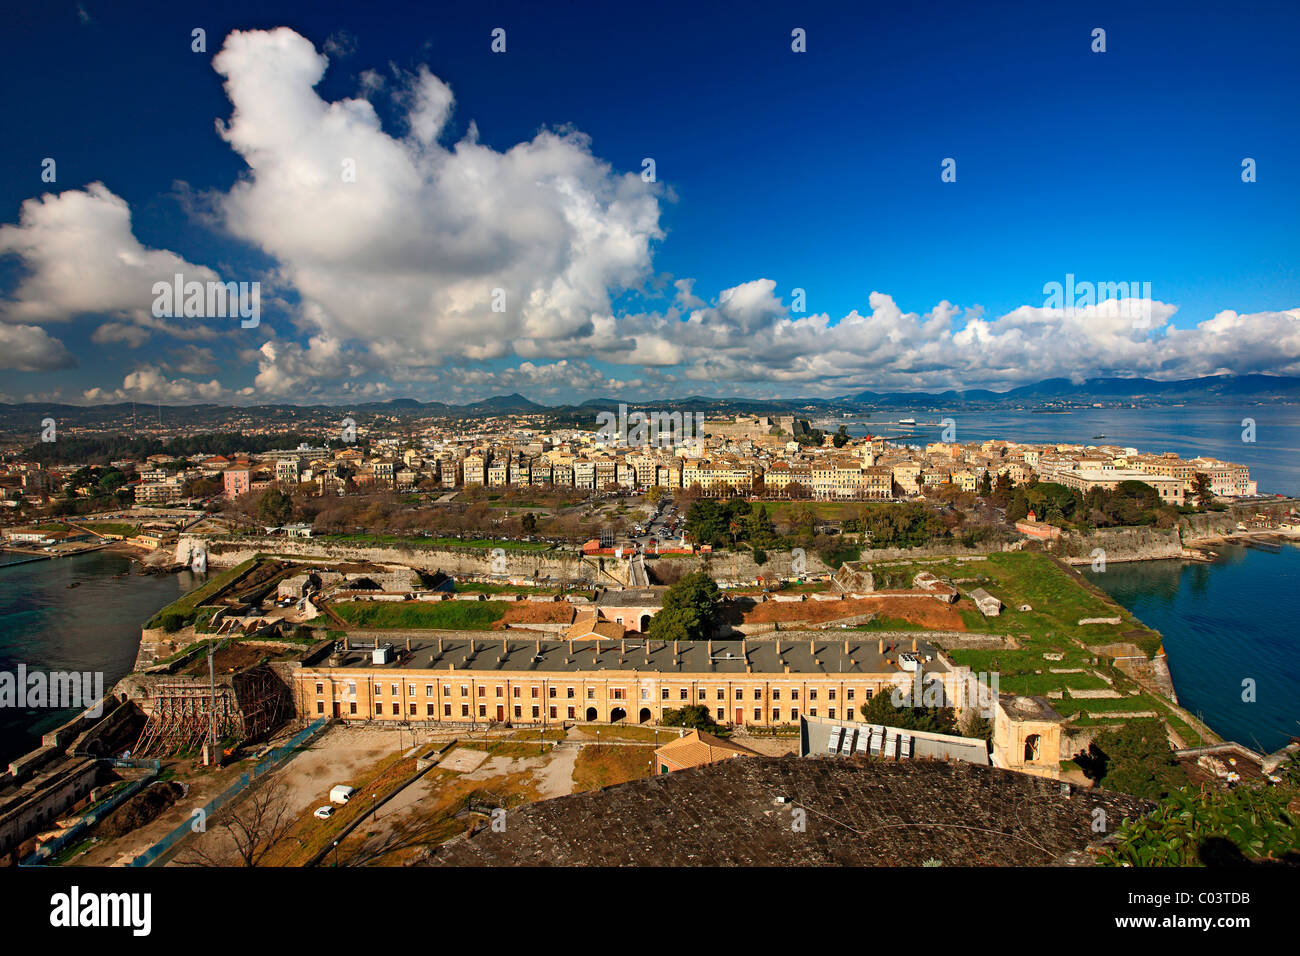 Panoramic view of Corfu town, Kerkyra Island, Greece Stock Photo